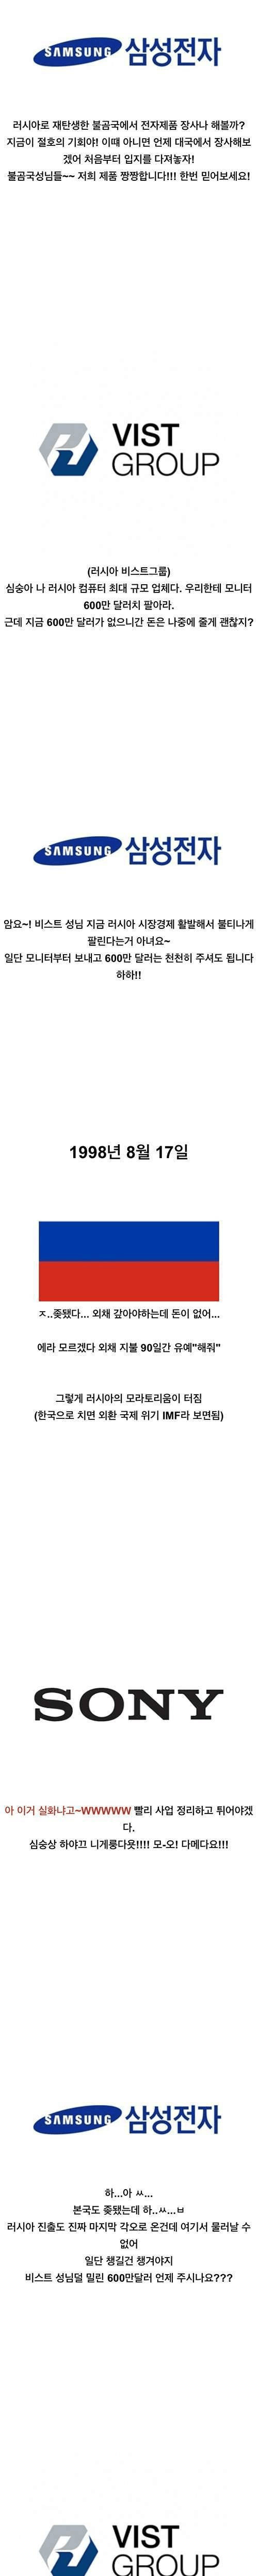 러시아가 한국을 좋아하는 이유.jpg